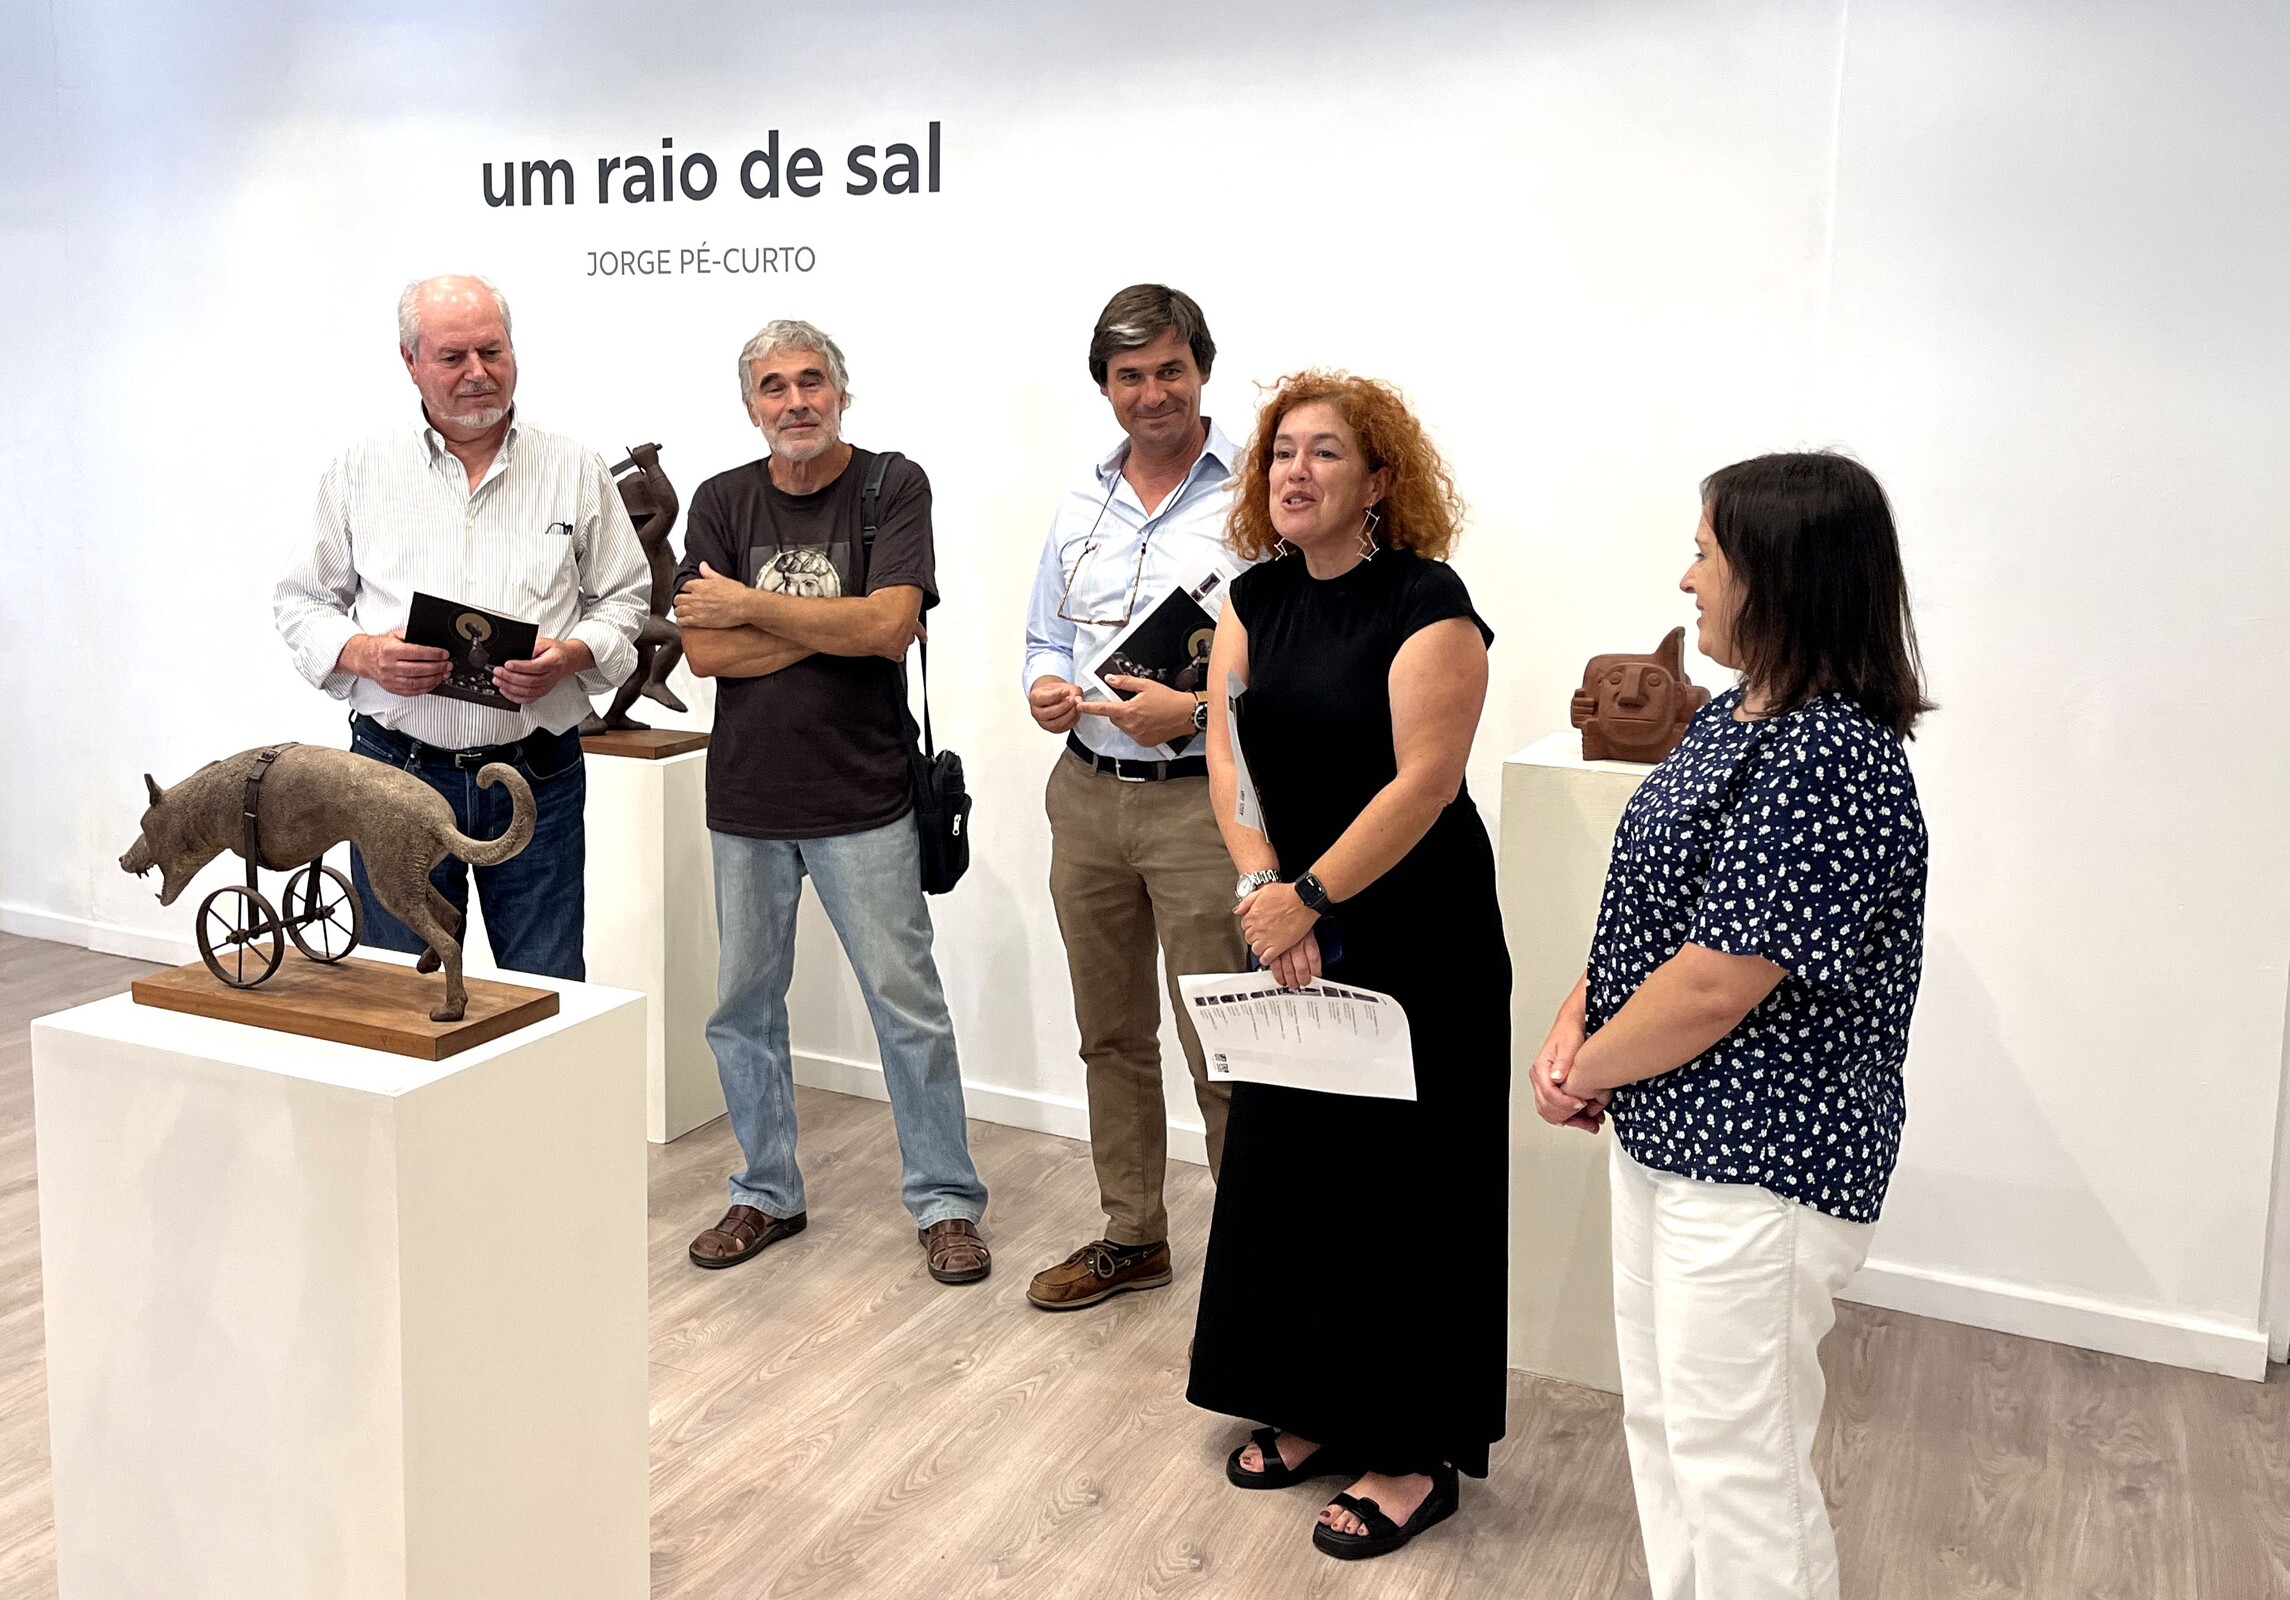 Exposição "Um Raio de Sal" de Jorge Pé-Curto abre ao público no MAEDS